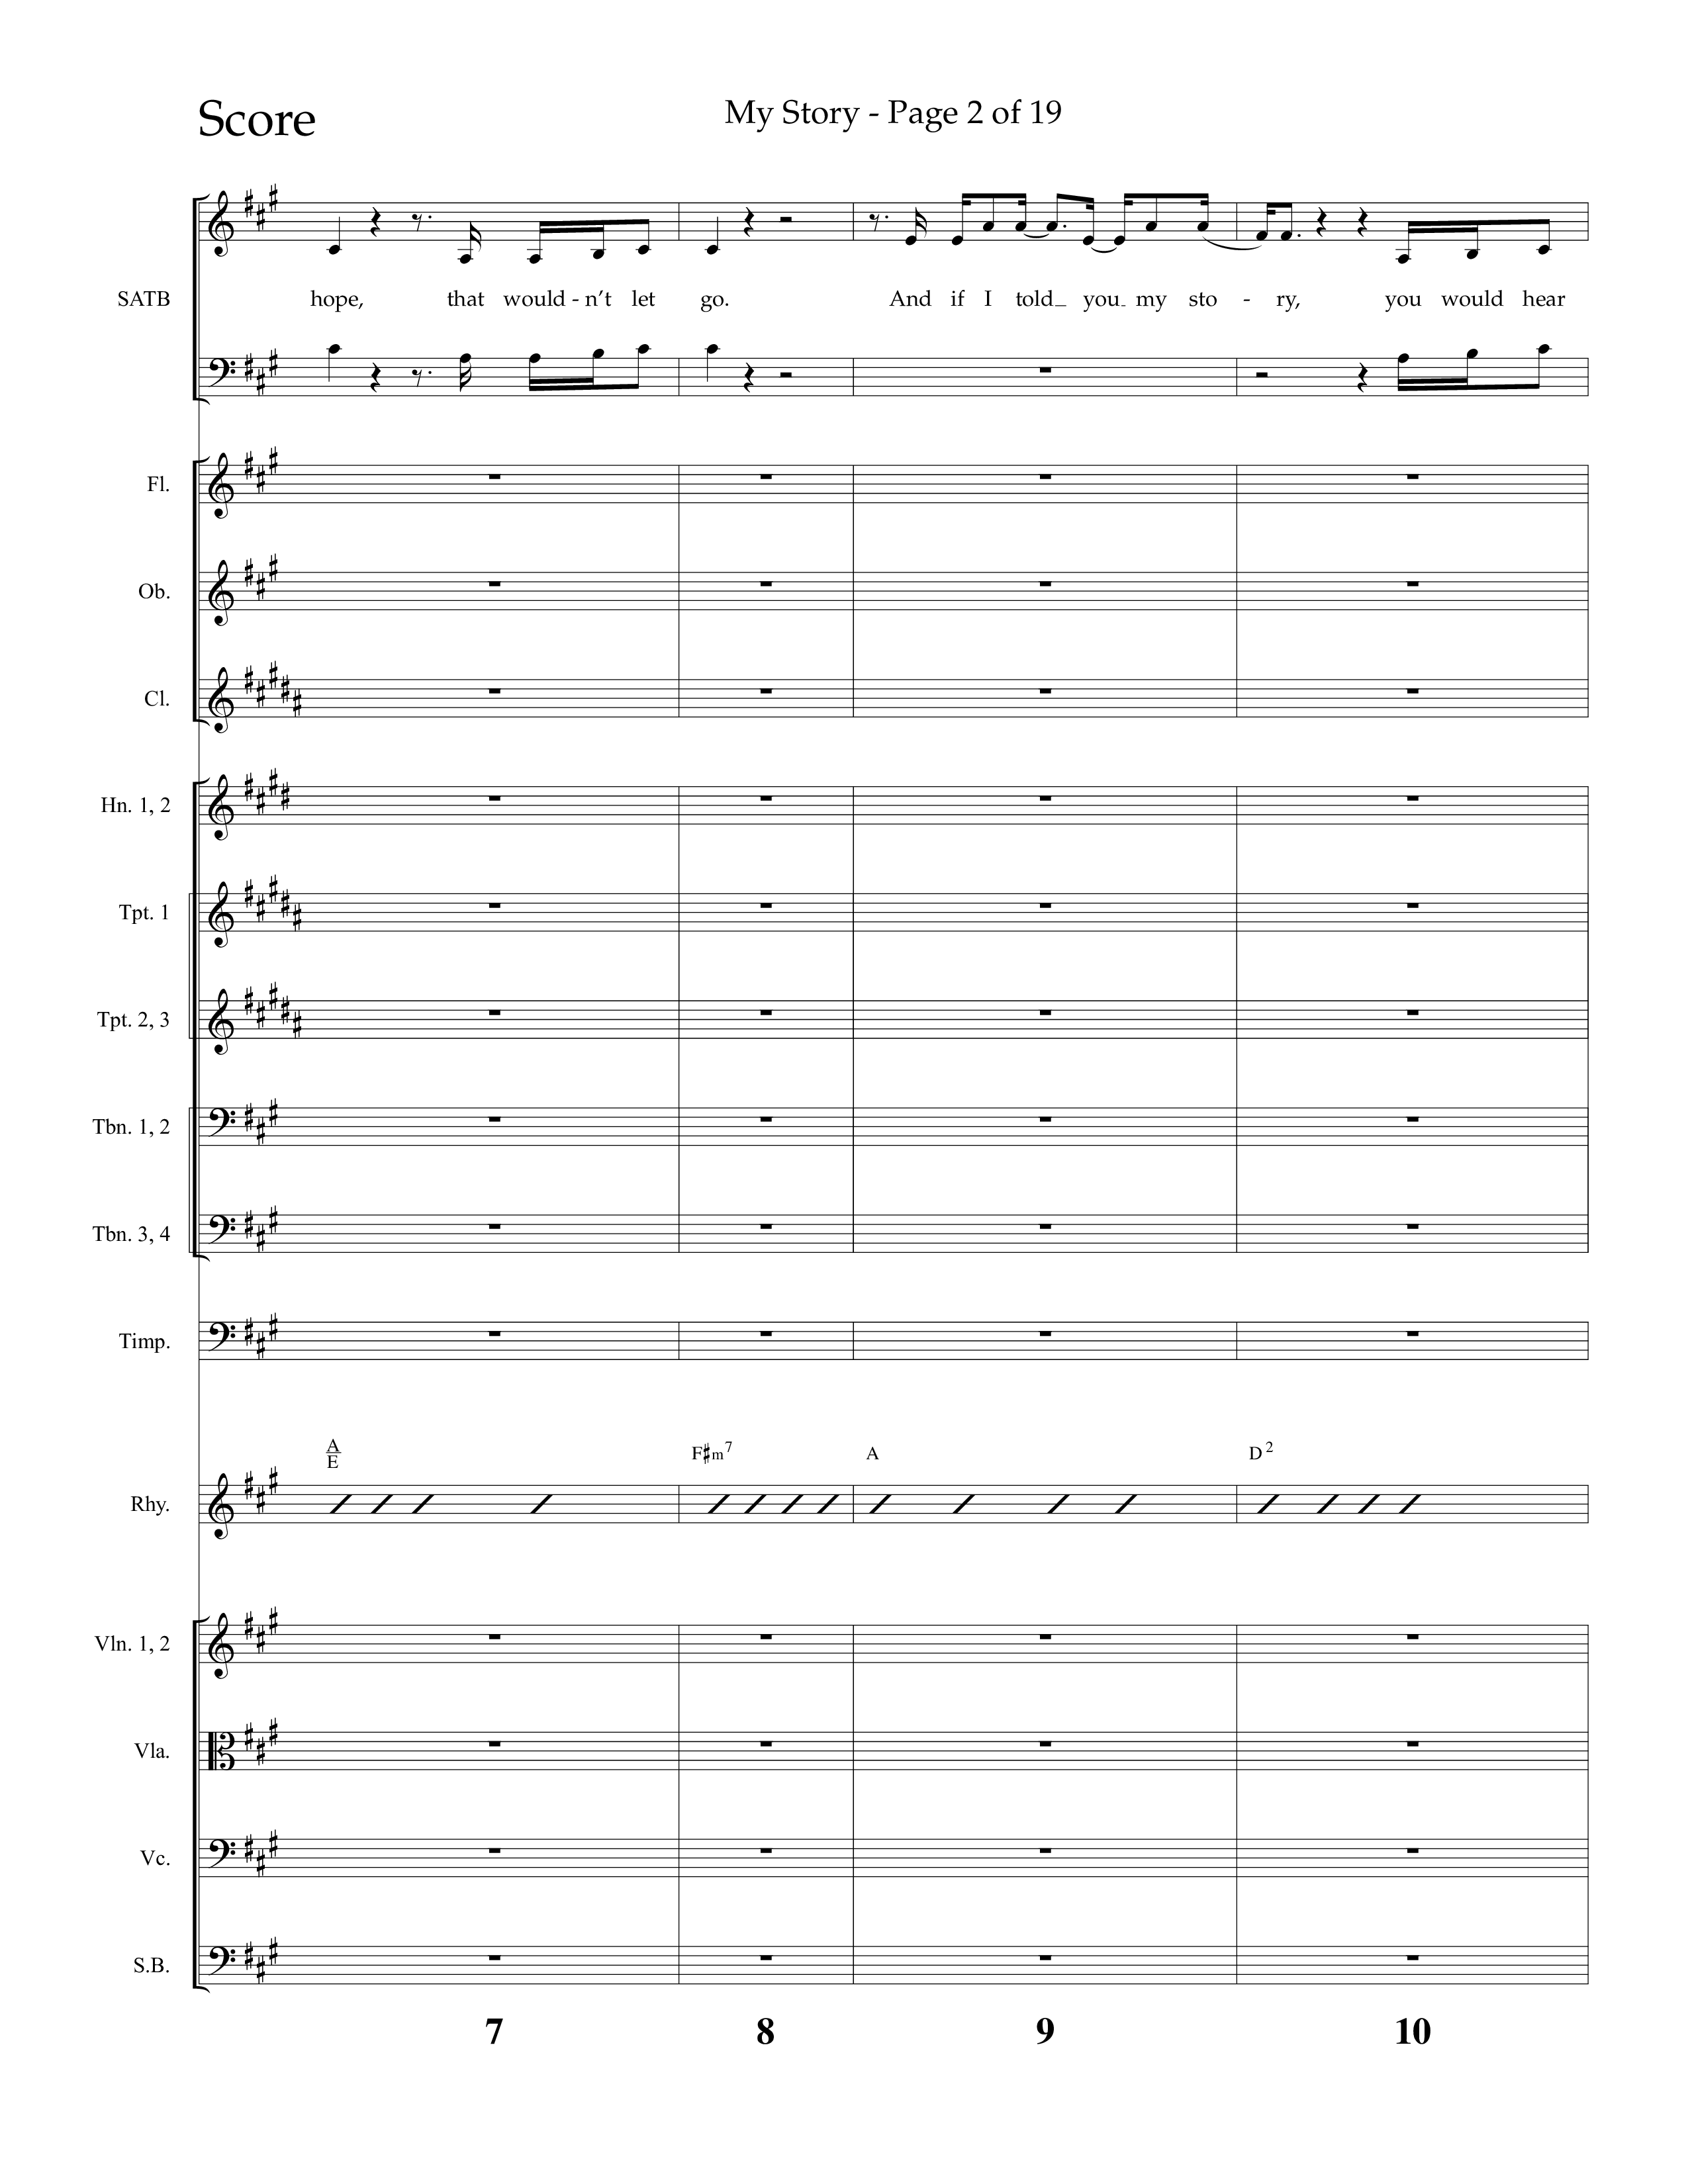 My Story (Choral Anthem SATB) Conductor's Score (Lifeway Choral / Arr. Craig Adams)